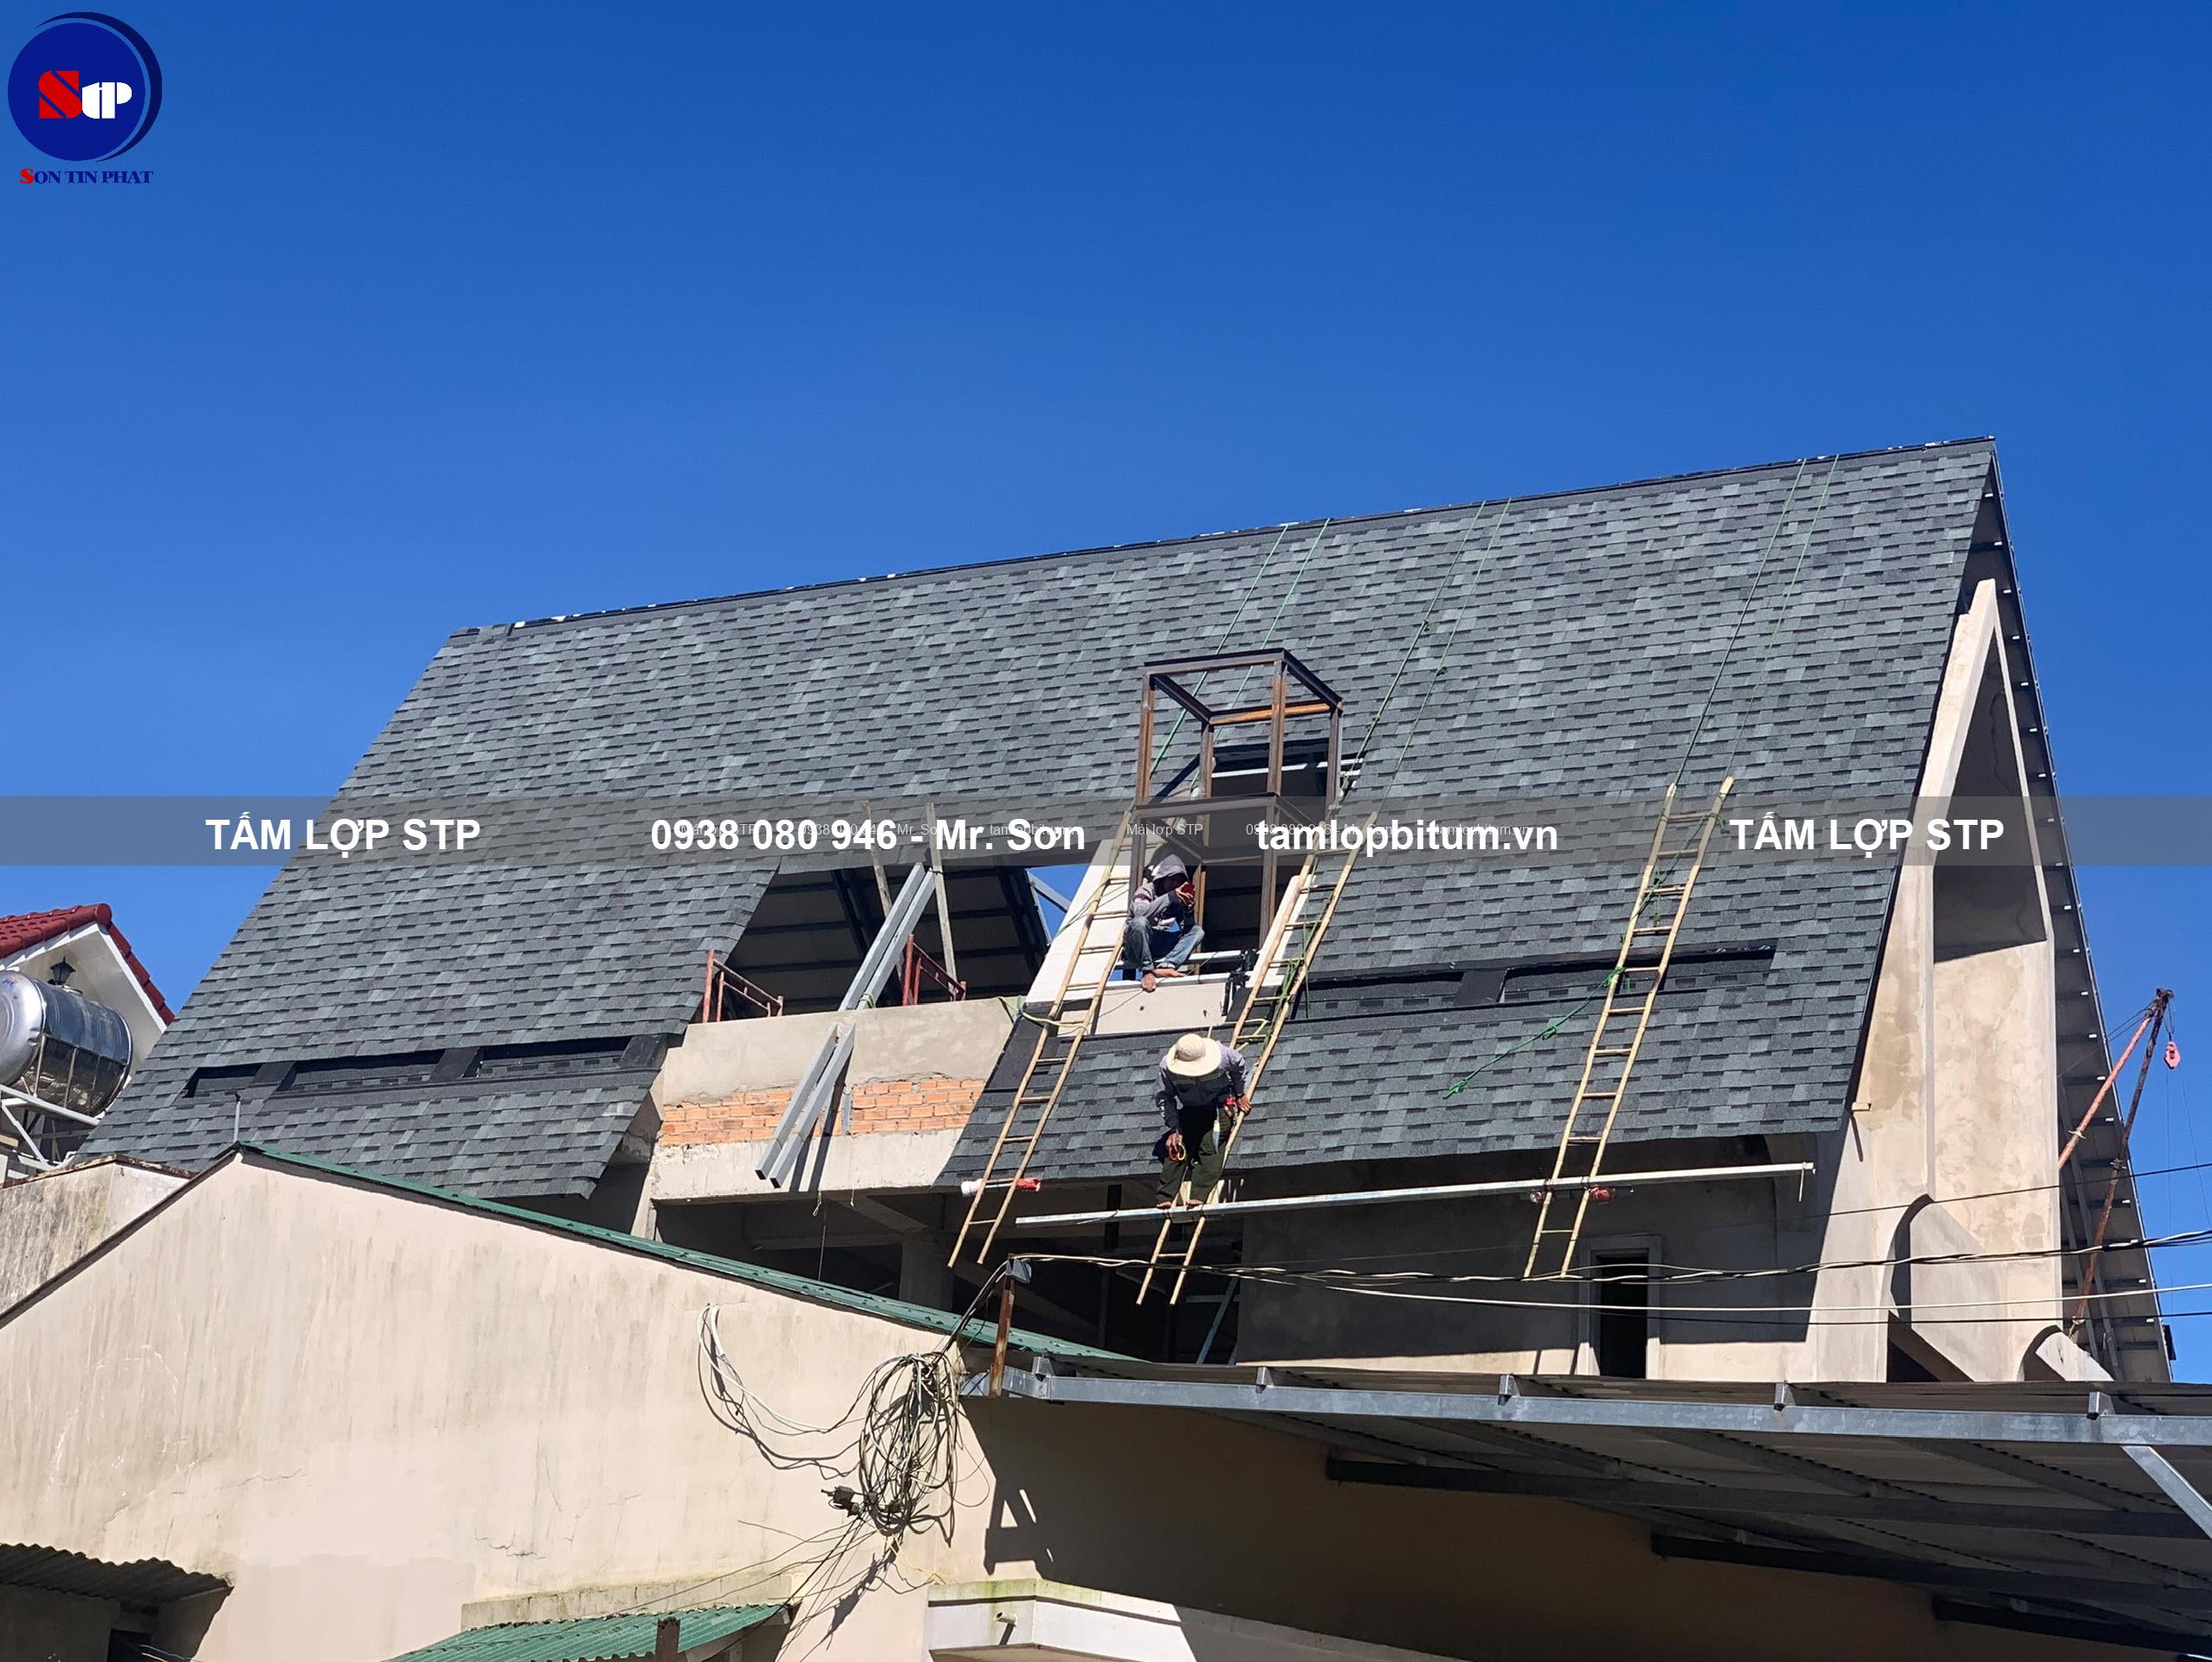 Ngói bitum phủ đá STP cho mái nhà có độ dốc lớn